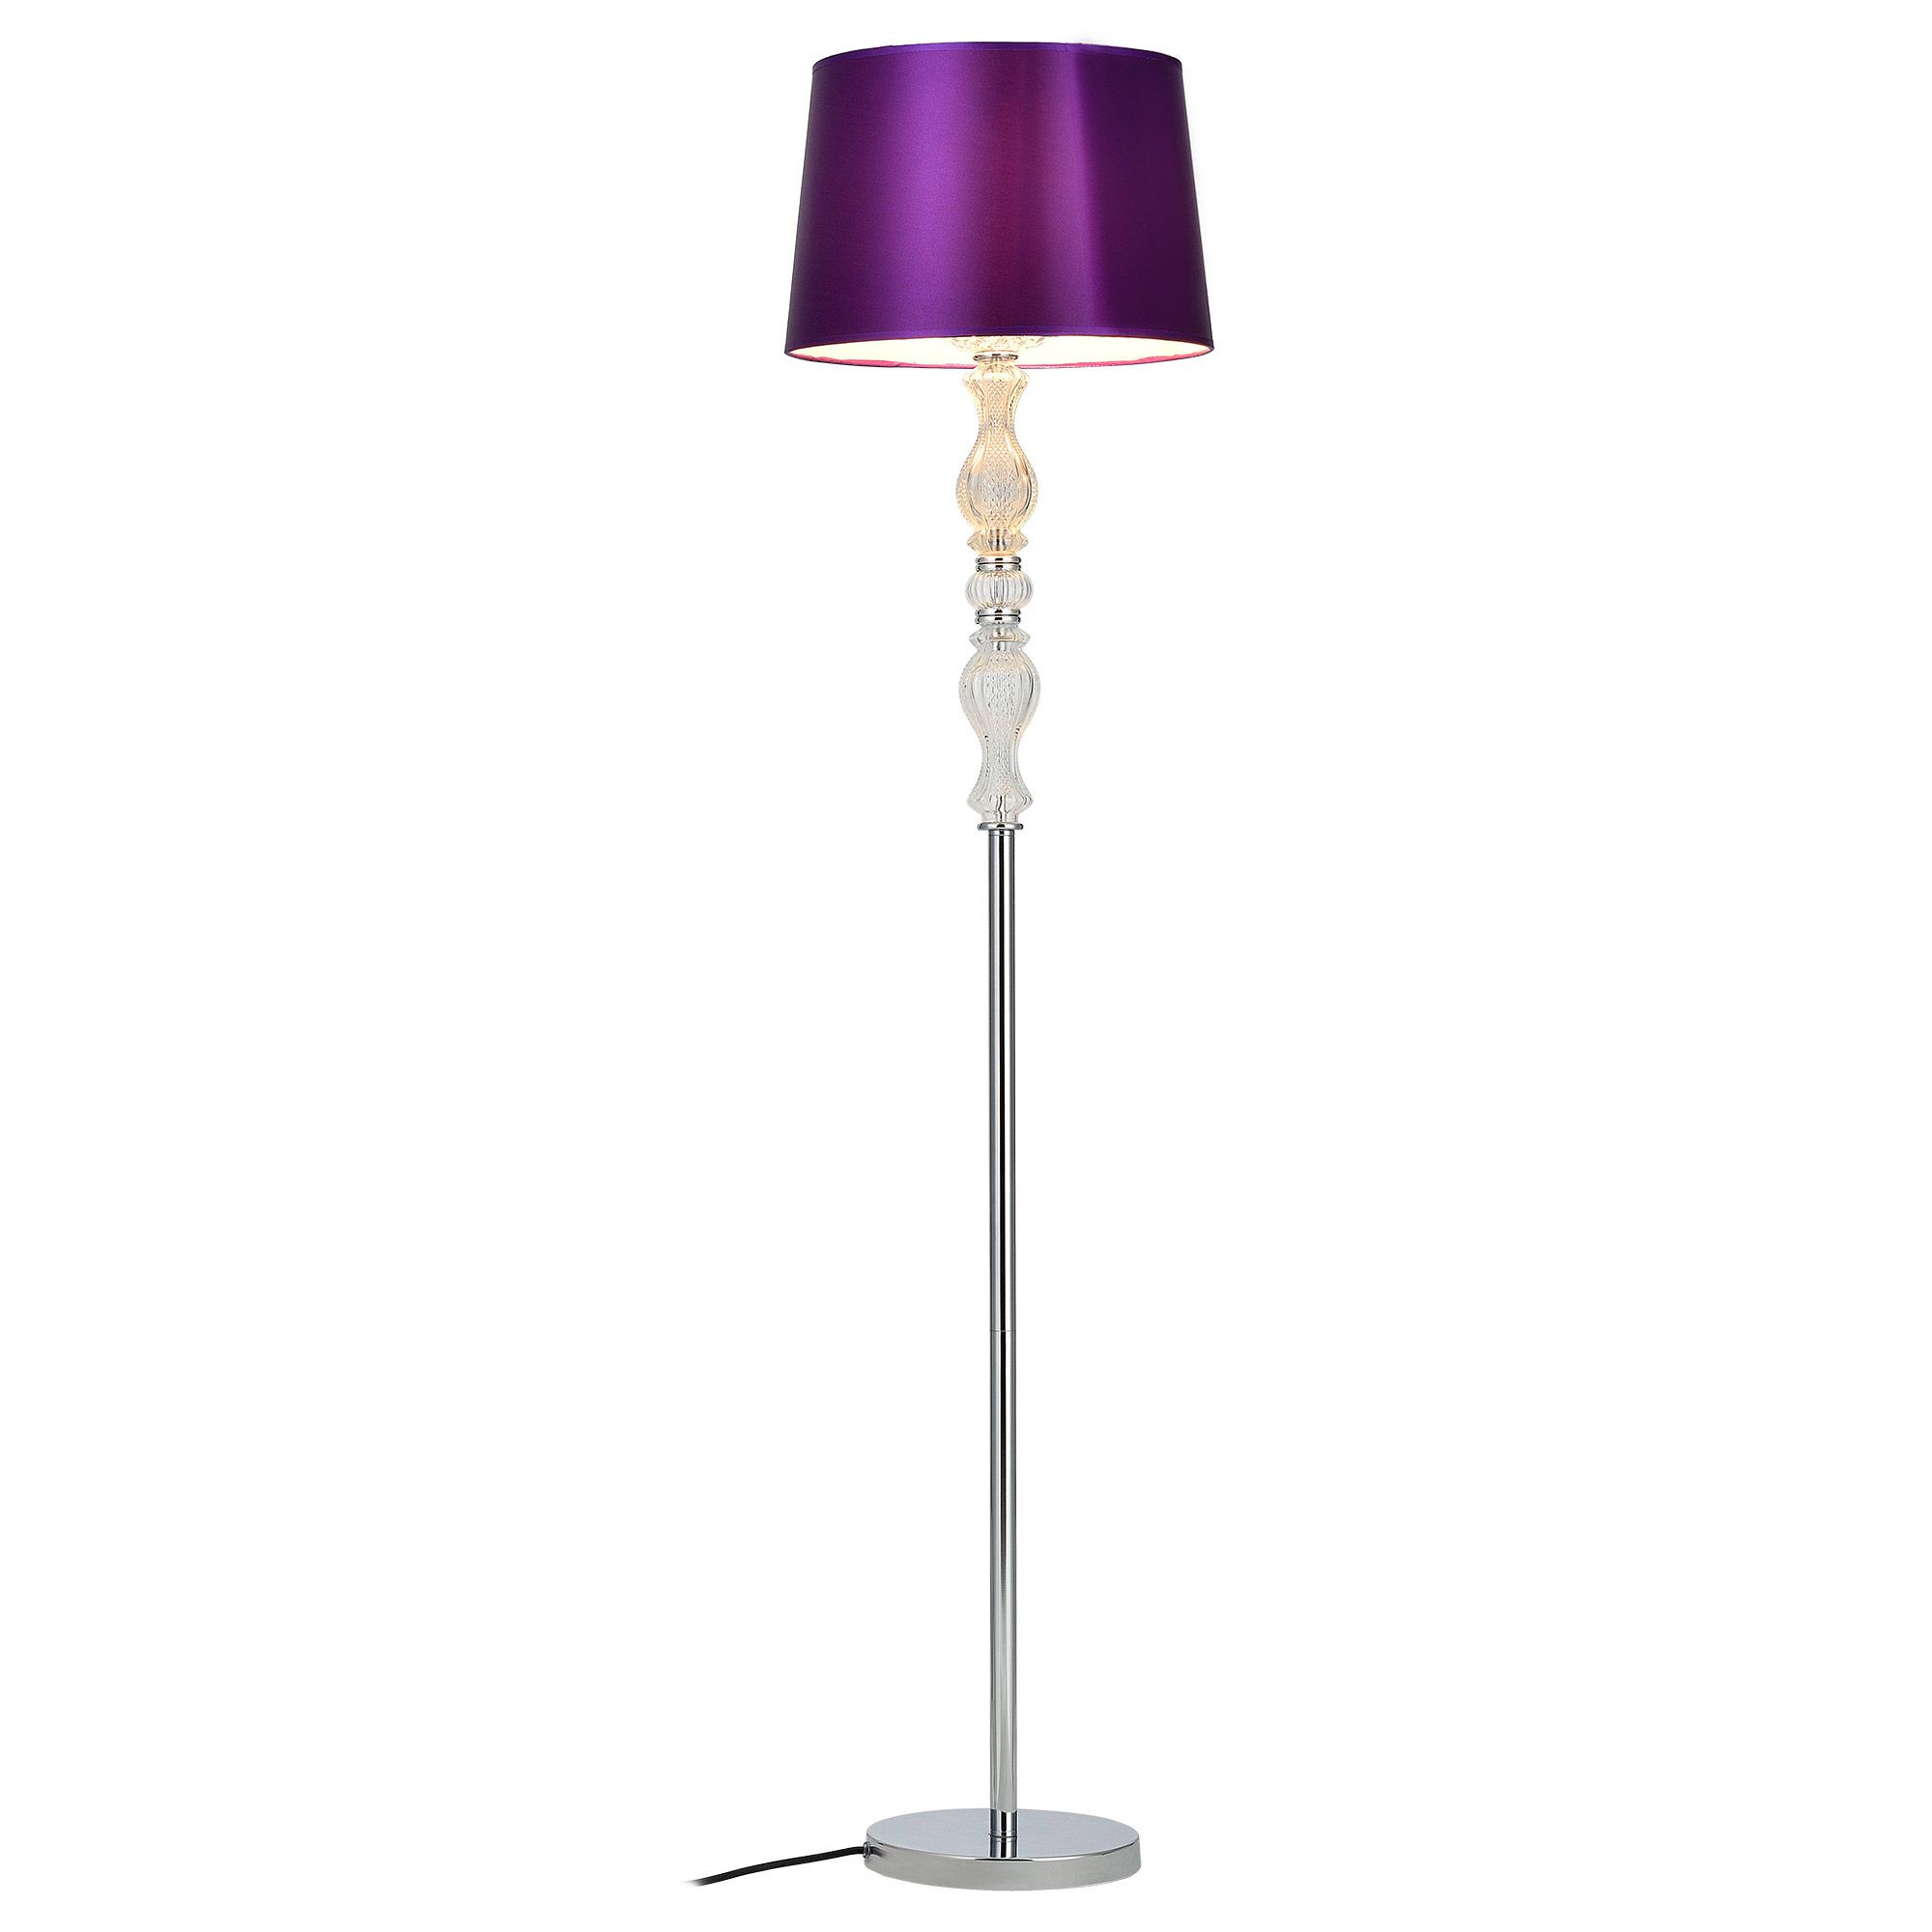 [lux.pro] Stojací lampa \"PurpleLight\" HT167491 - H.T. Trade Service GmbH & Co. KG